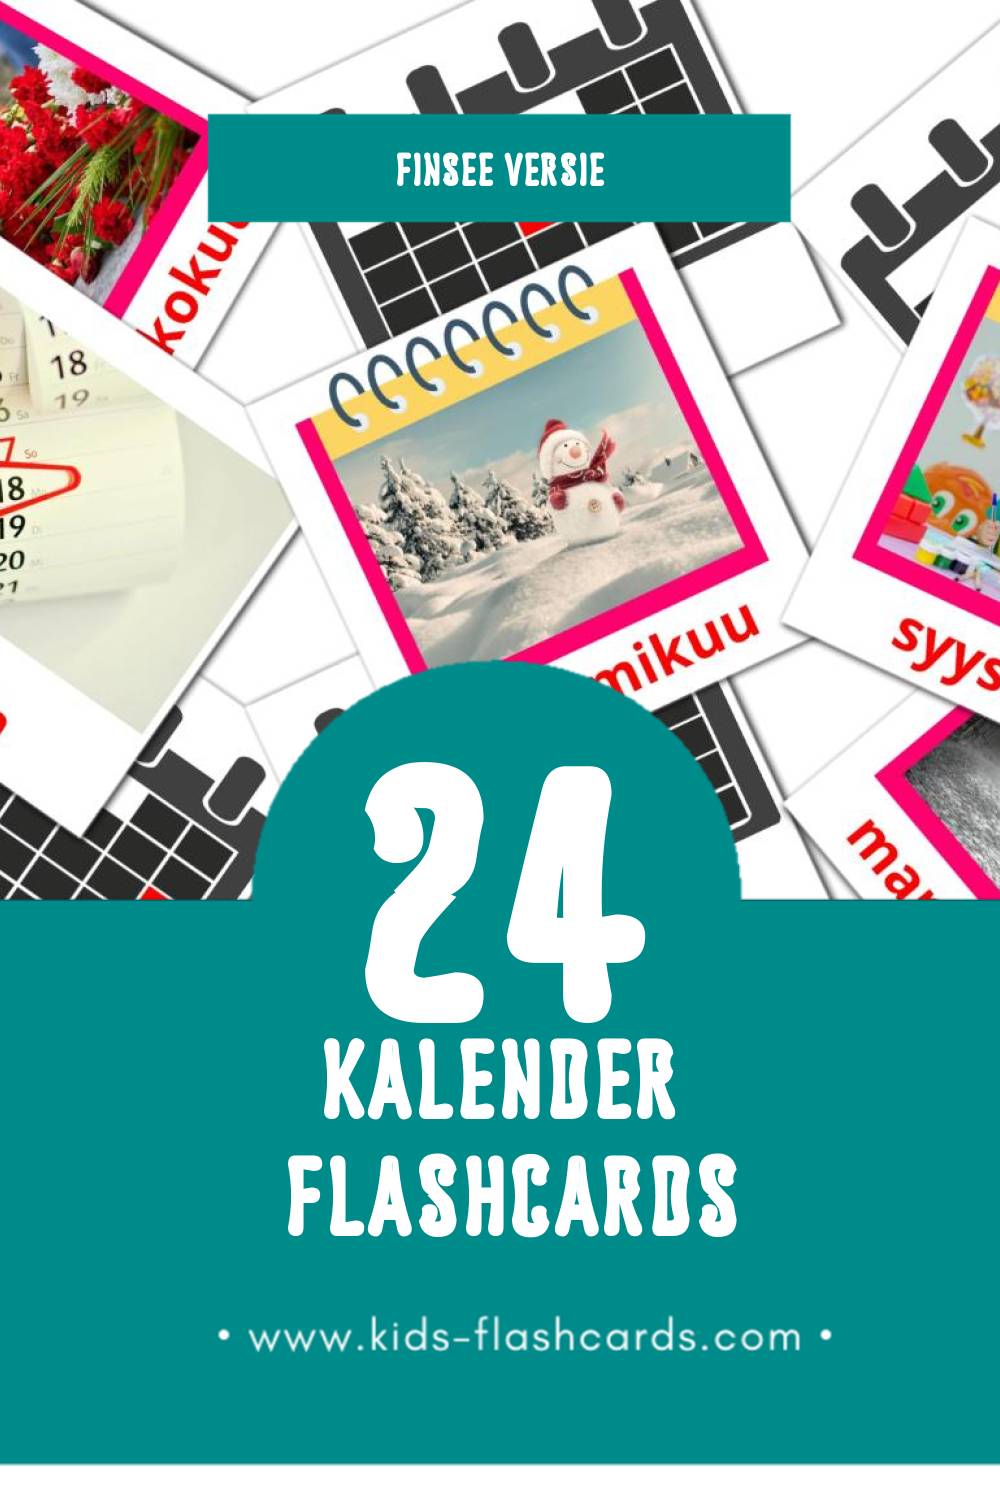 Visuele Kalenteri Flashcards voor Kleuters (24 kaarten in het Finse)